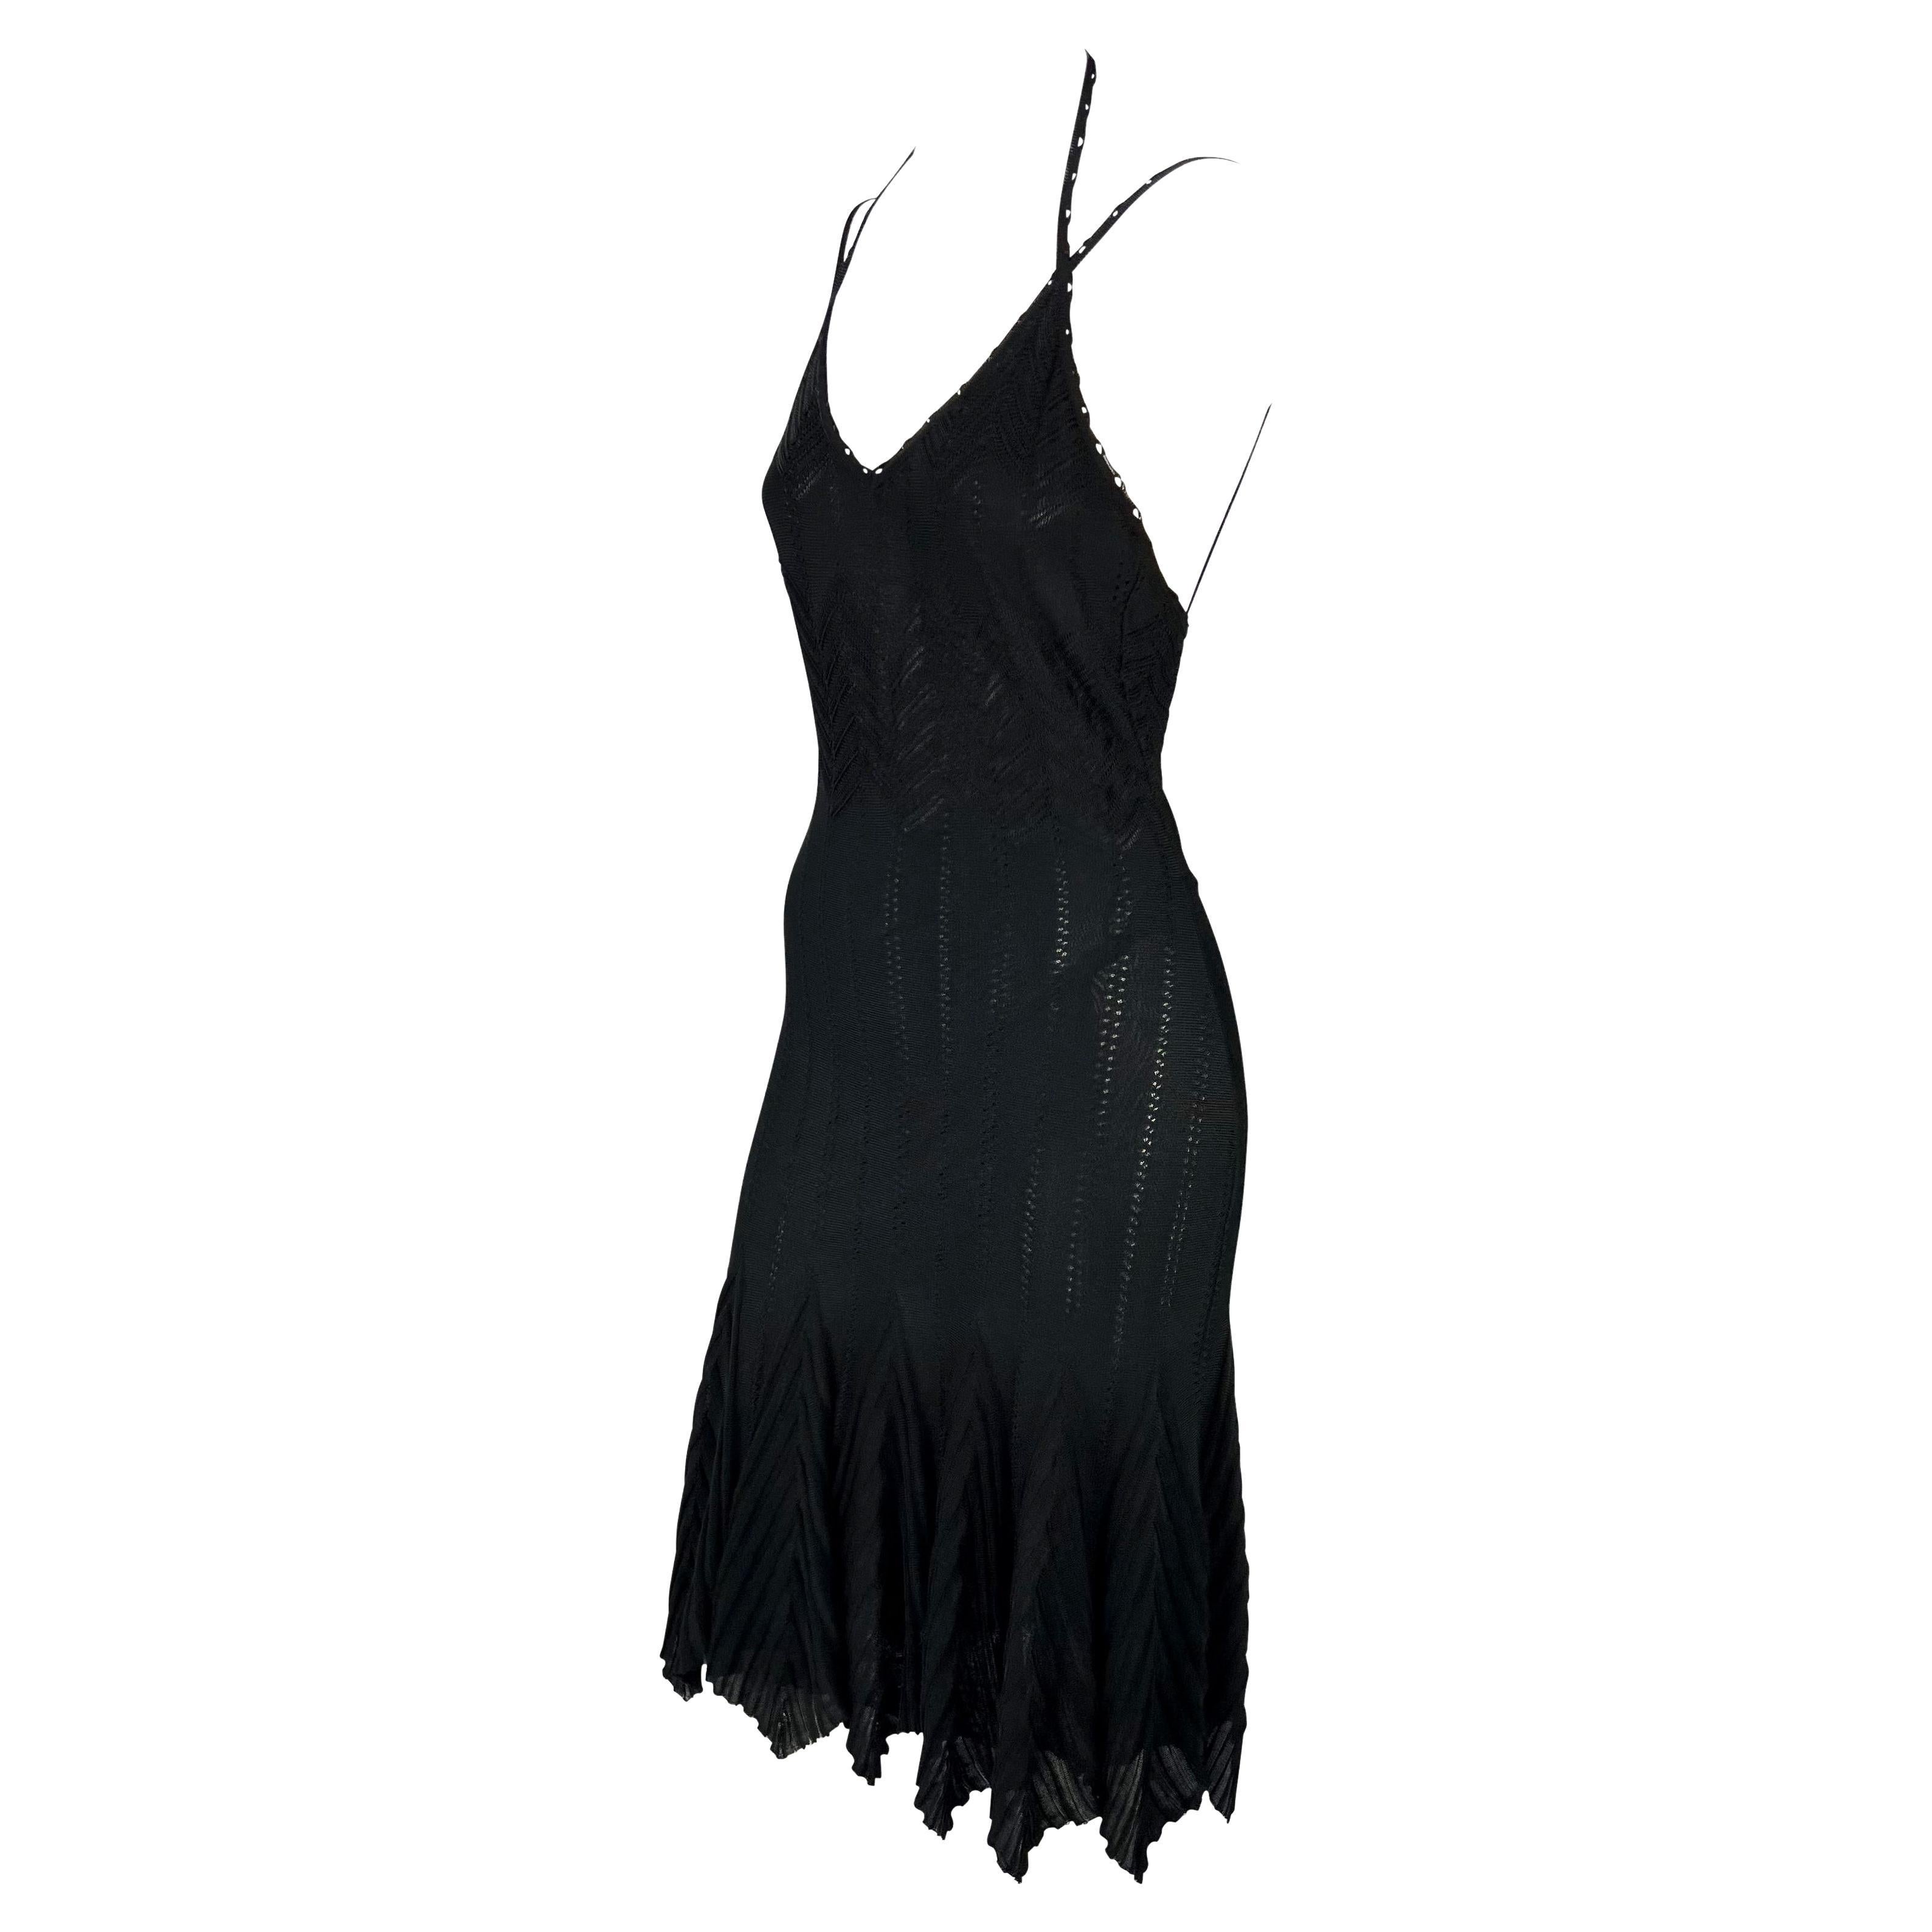 Présentation d'une robe en maille noire de la boutique Christian Dior, dessinée par John Galliano. Issue de la collection printemps/été 2006, cette magnifique robe extensible se compose d'un glissement intérieur transparent et d'un extérieur en